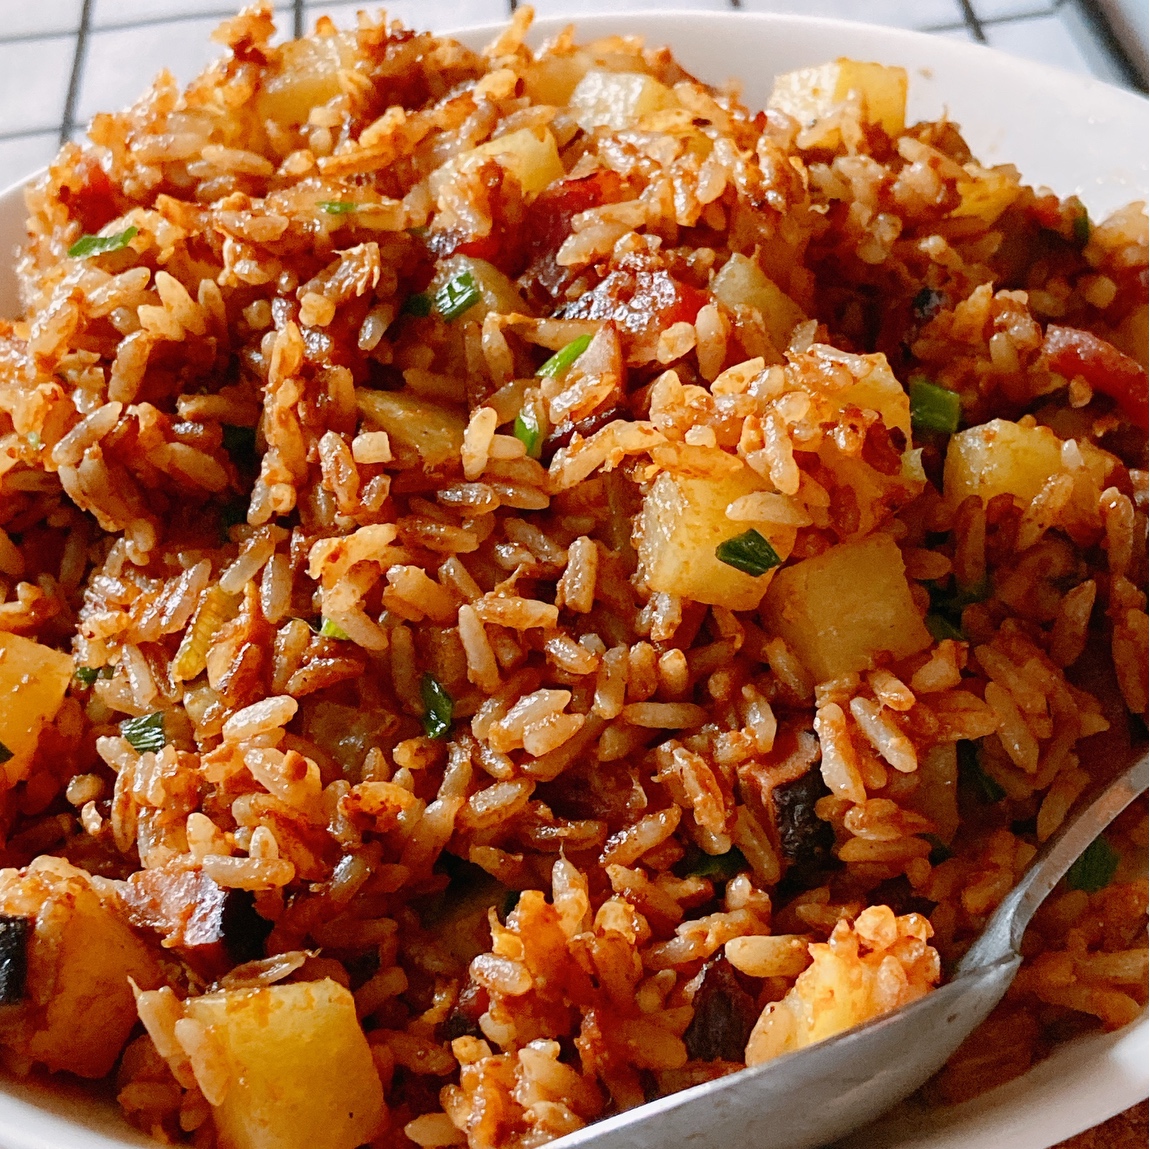 剩米饭的神仙吃法——土豆腊肠炒饭